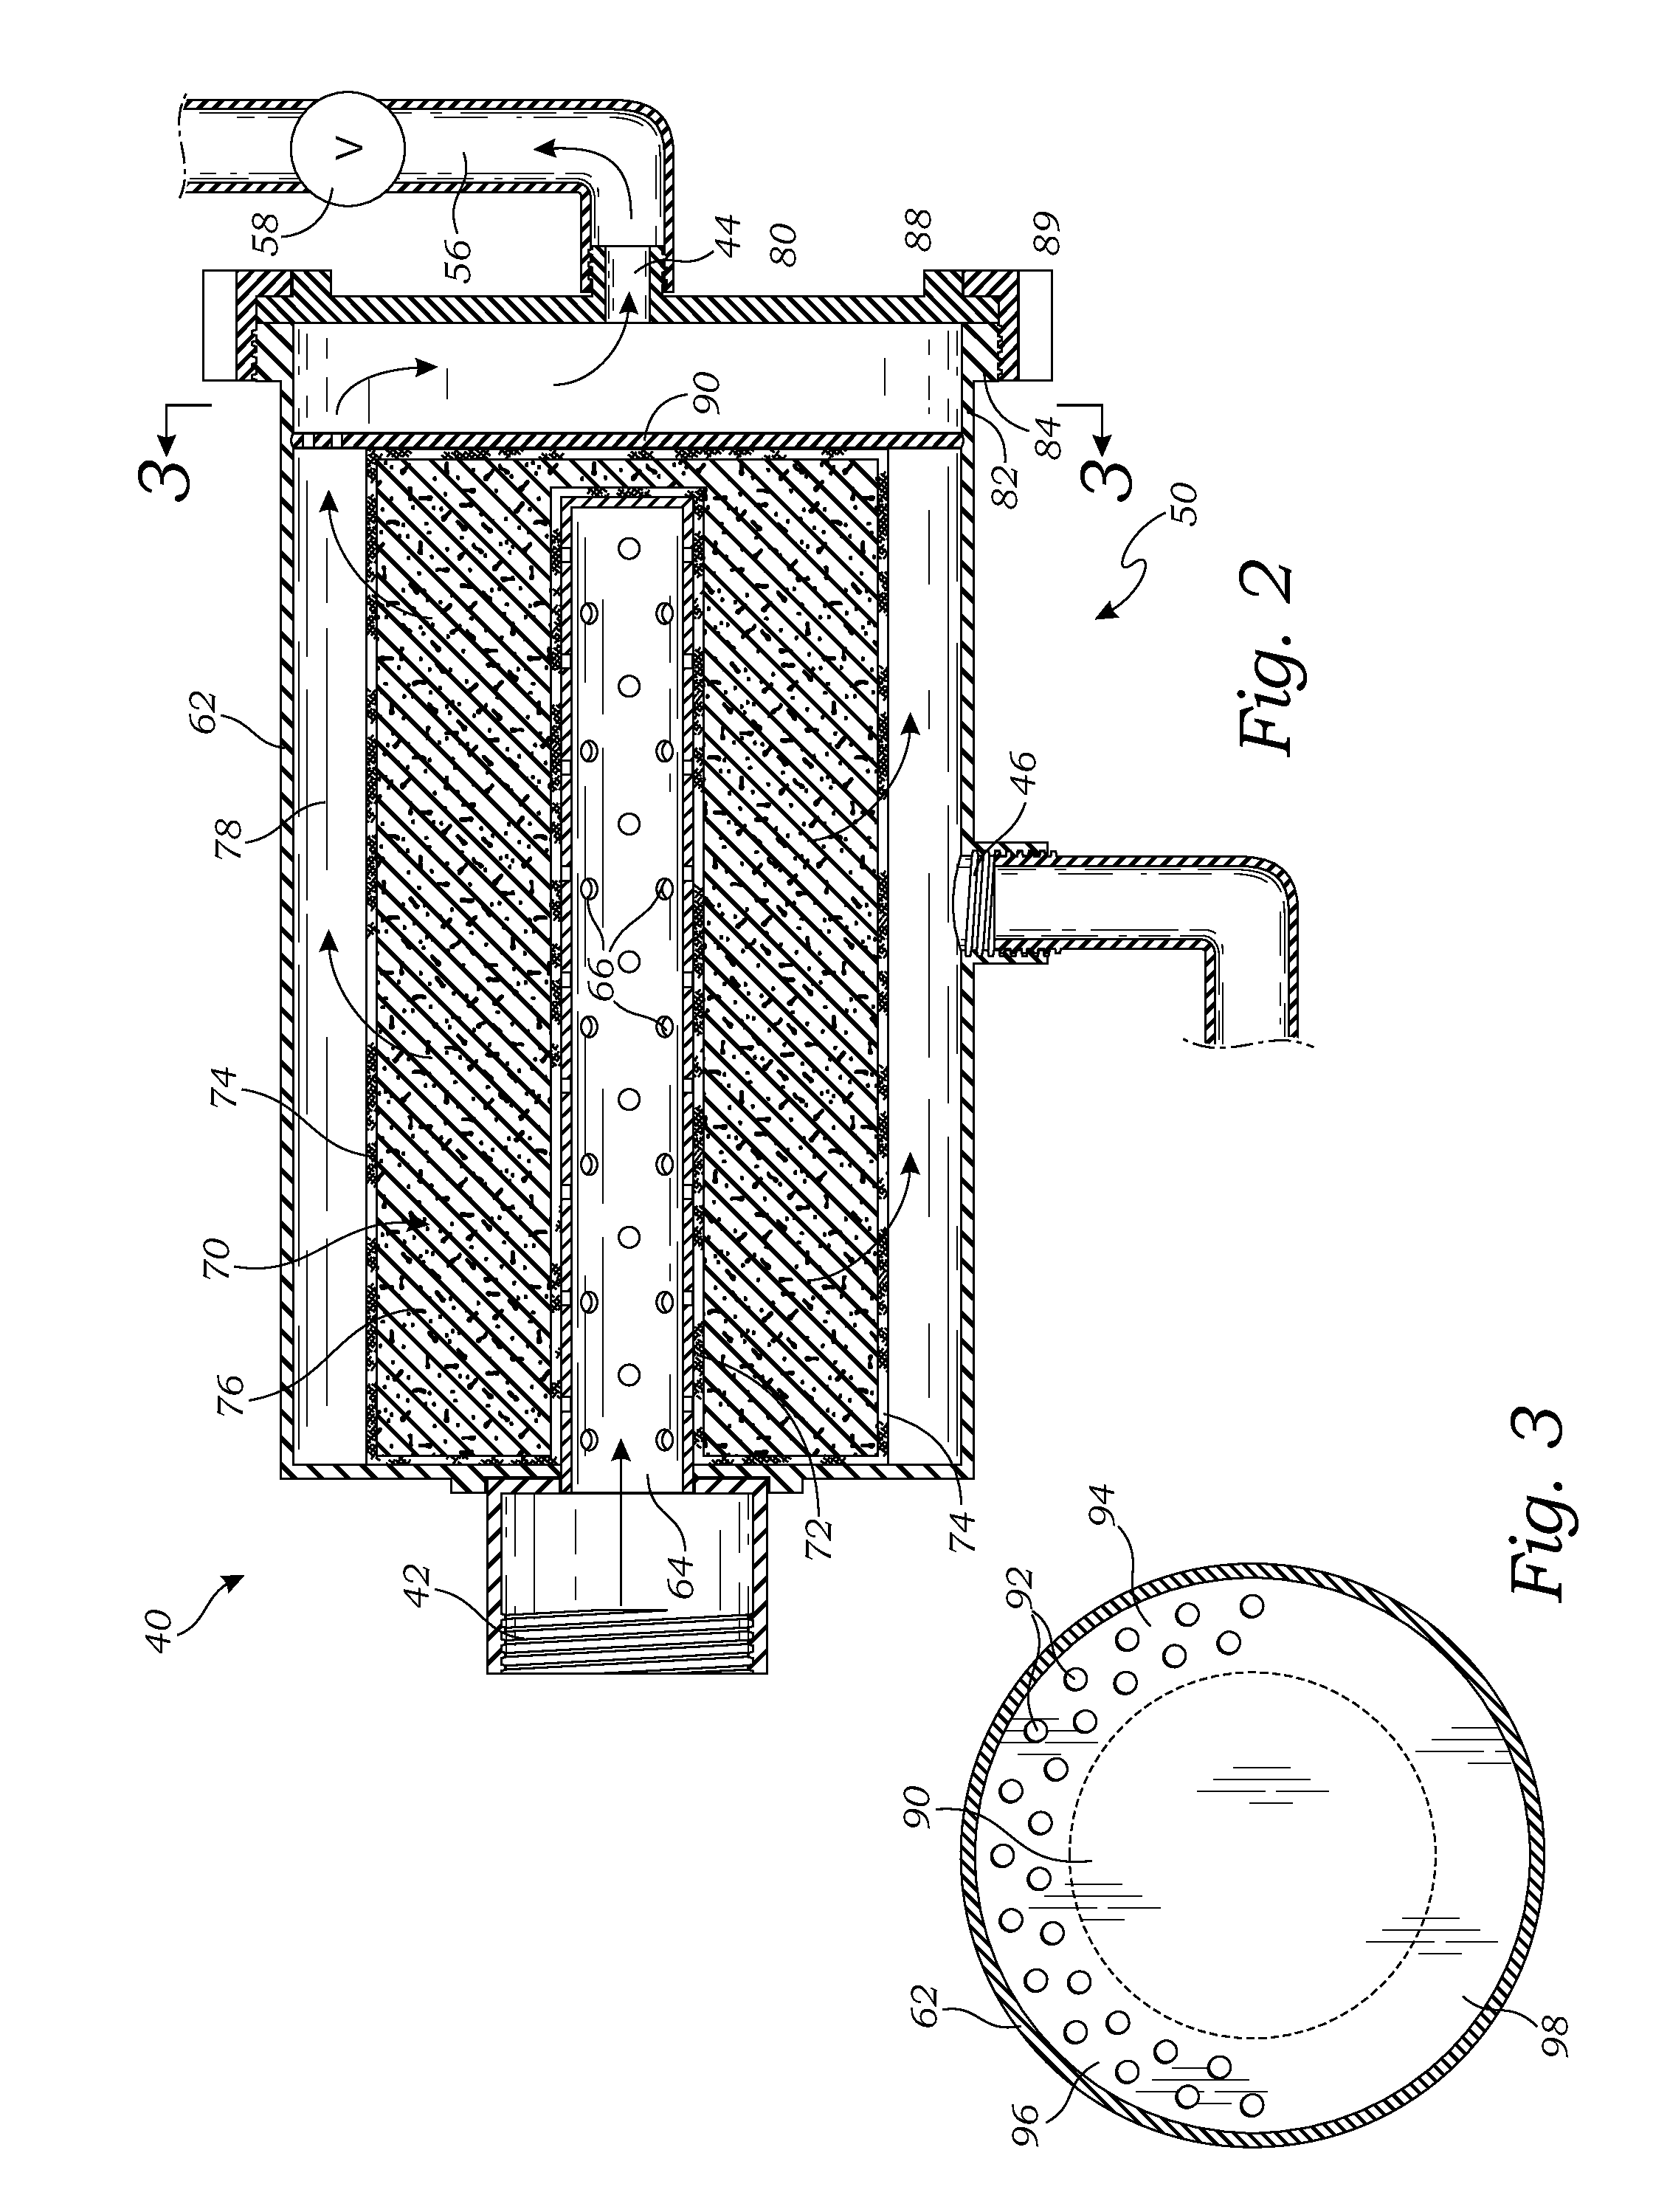 Filtration system for a compressor station